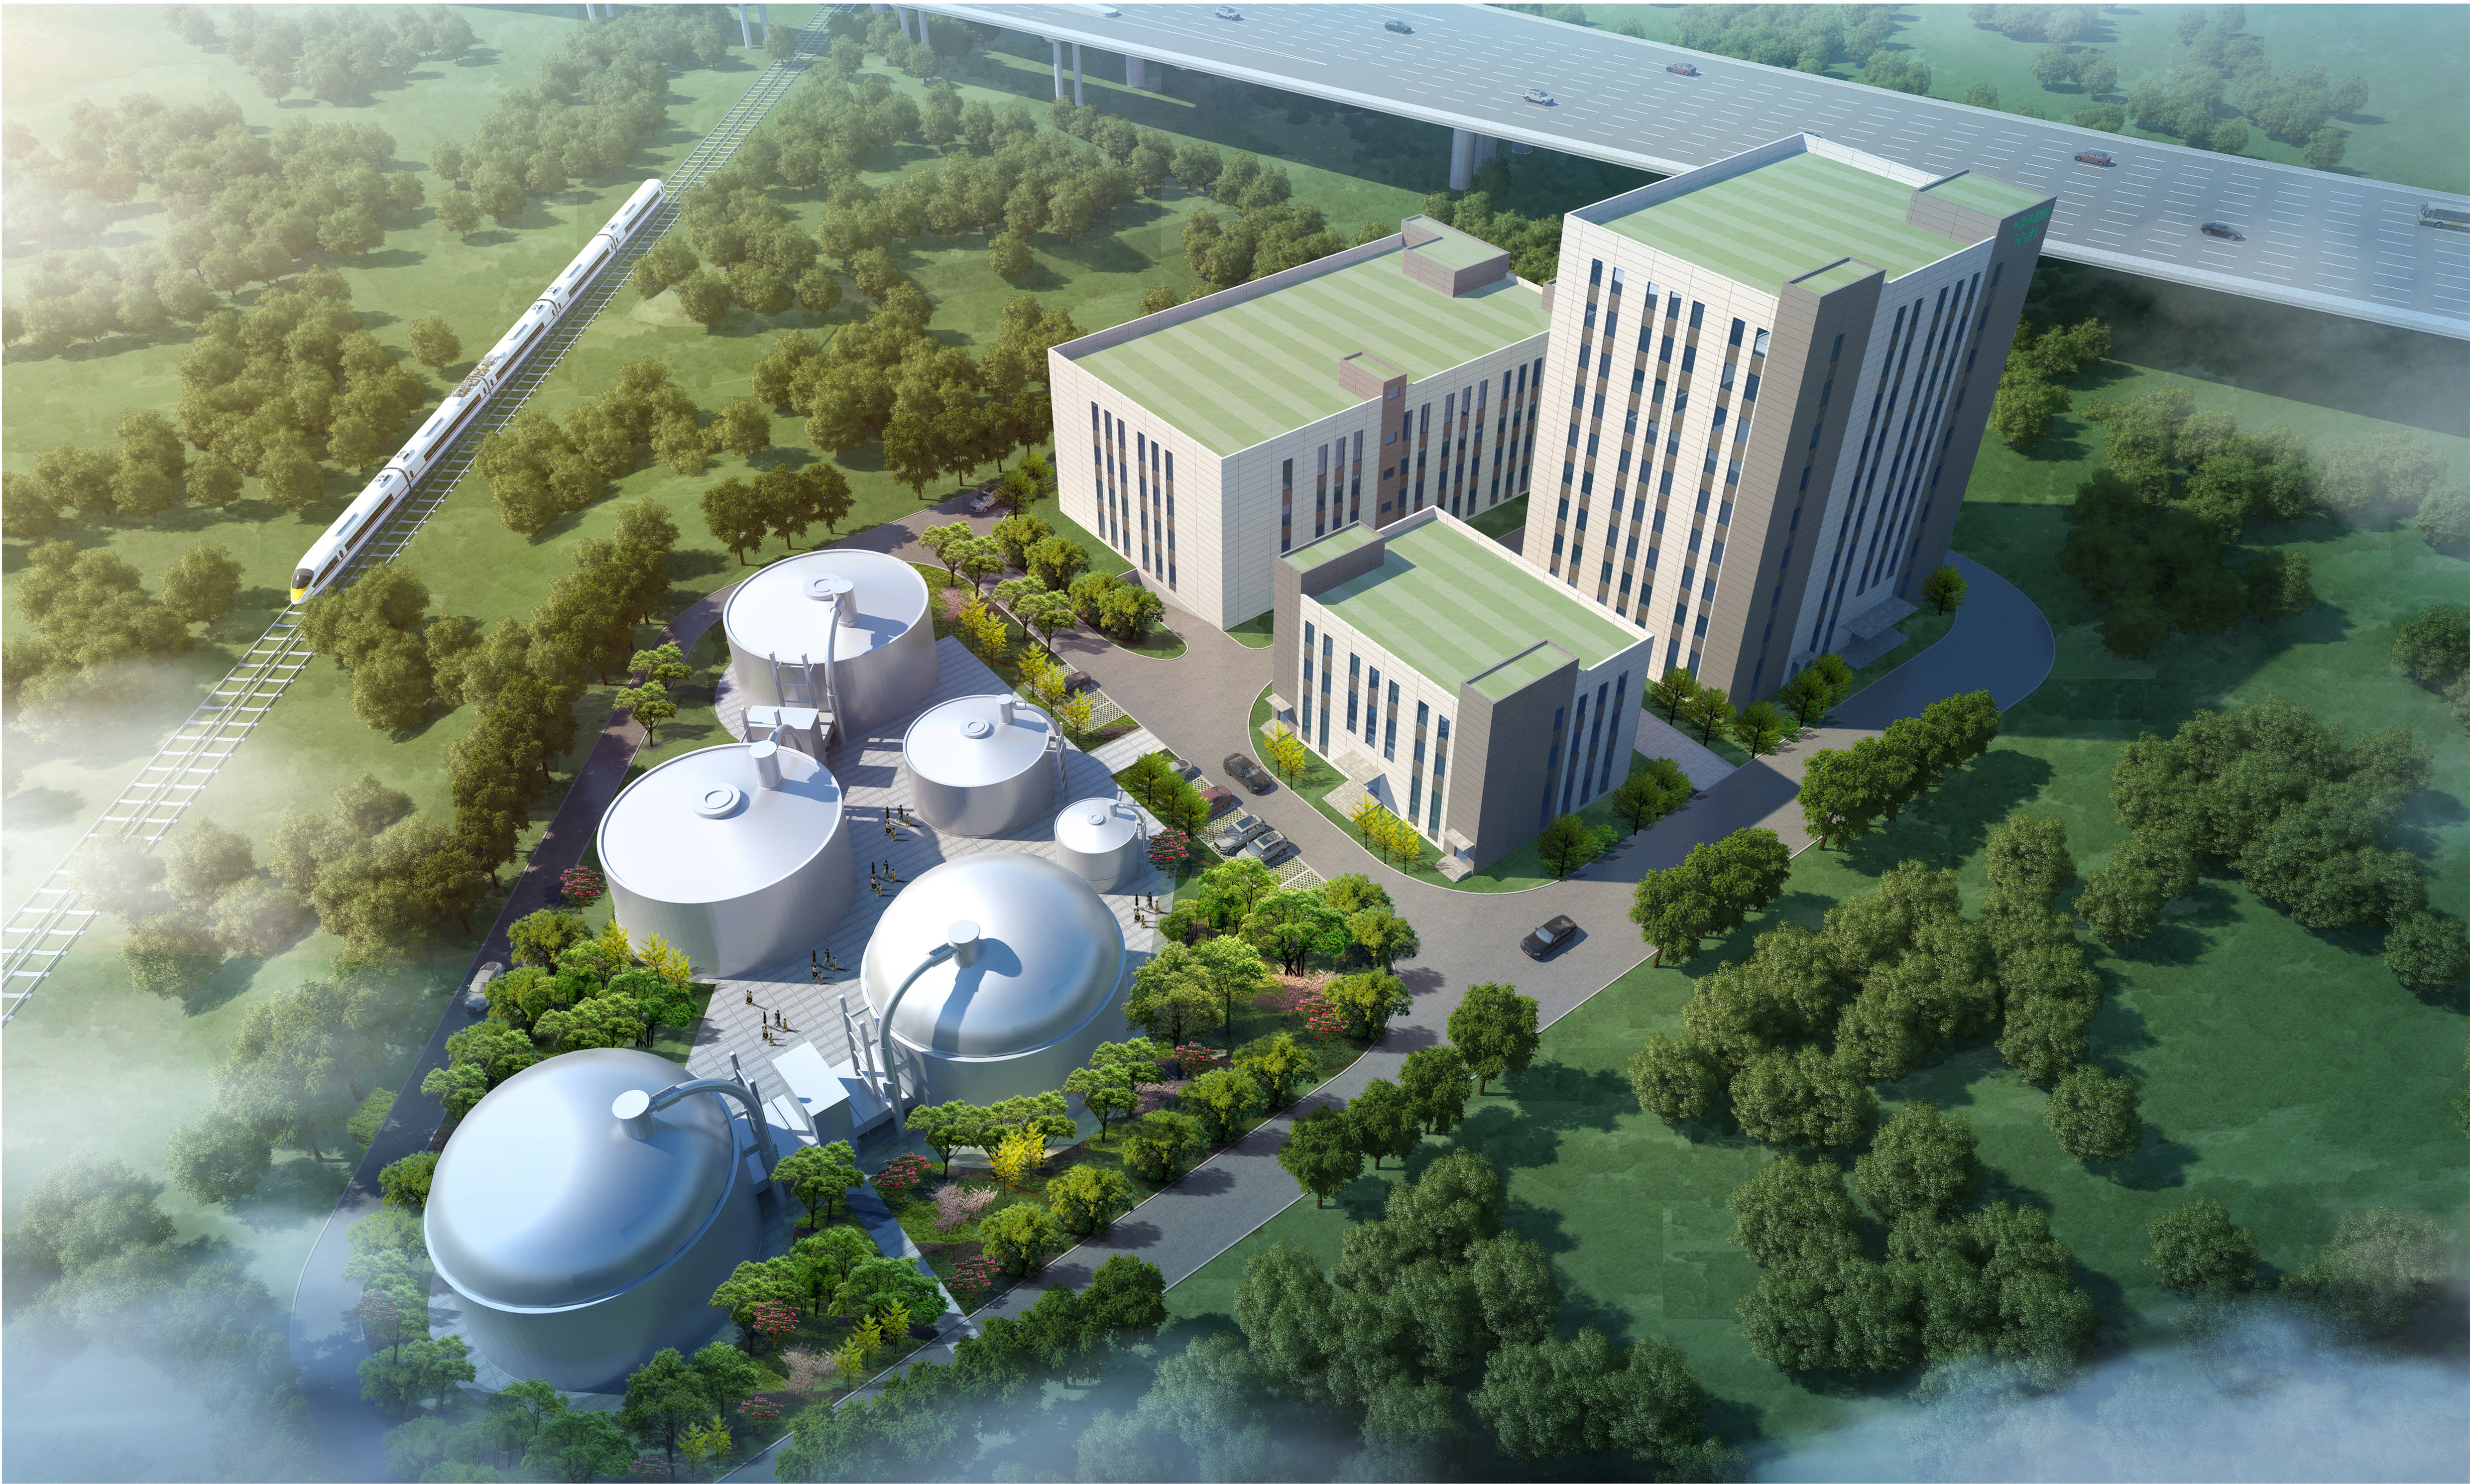 深圳市海吉星环保有限责任公司综合环保工程设计项目